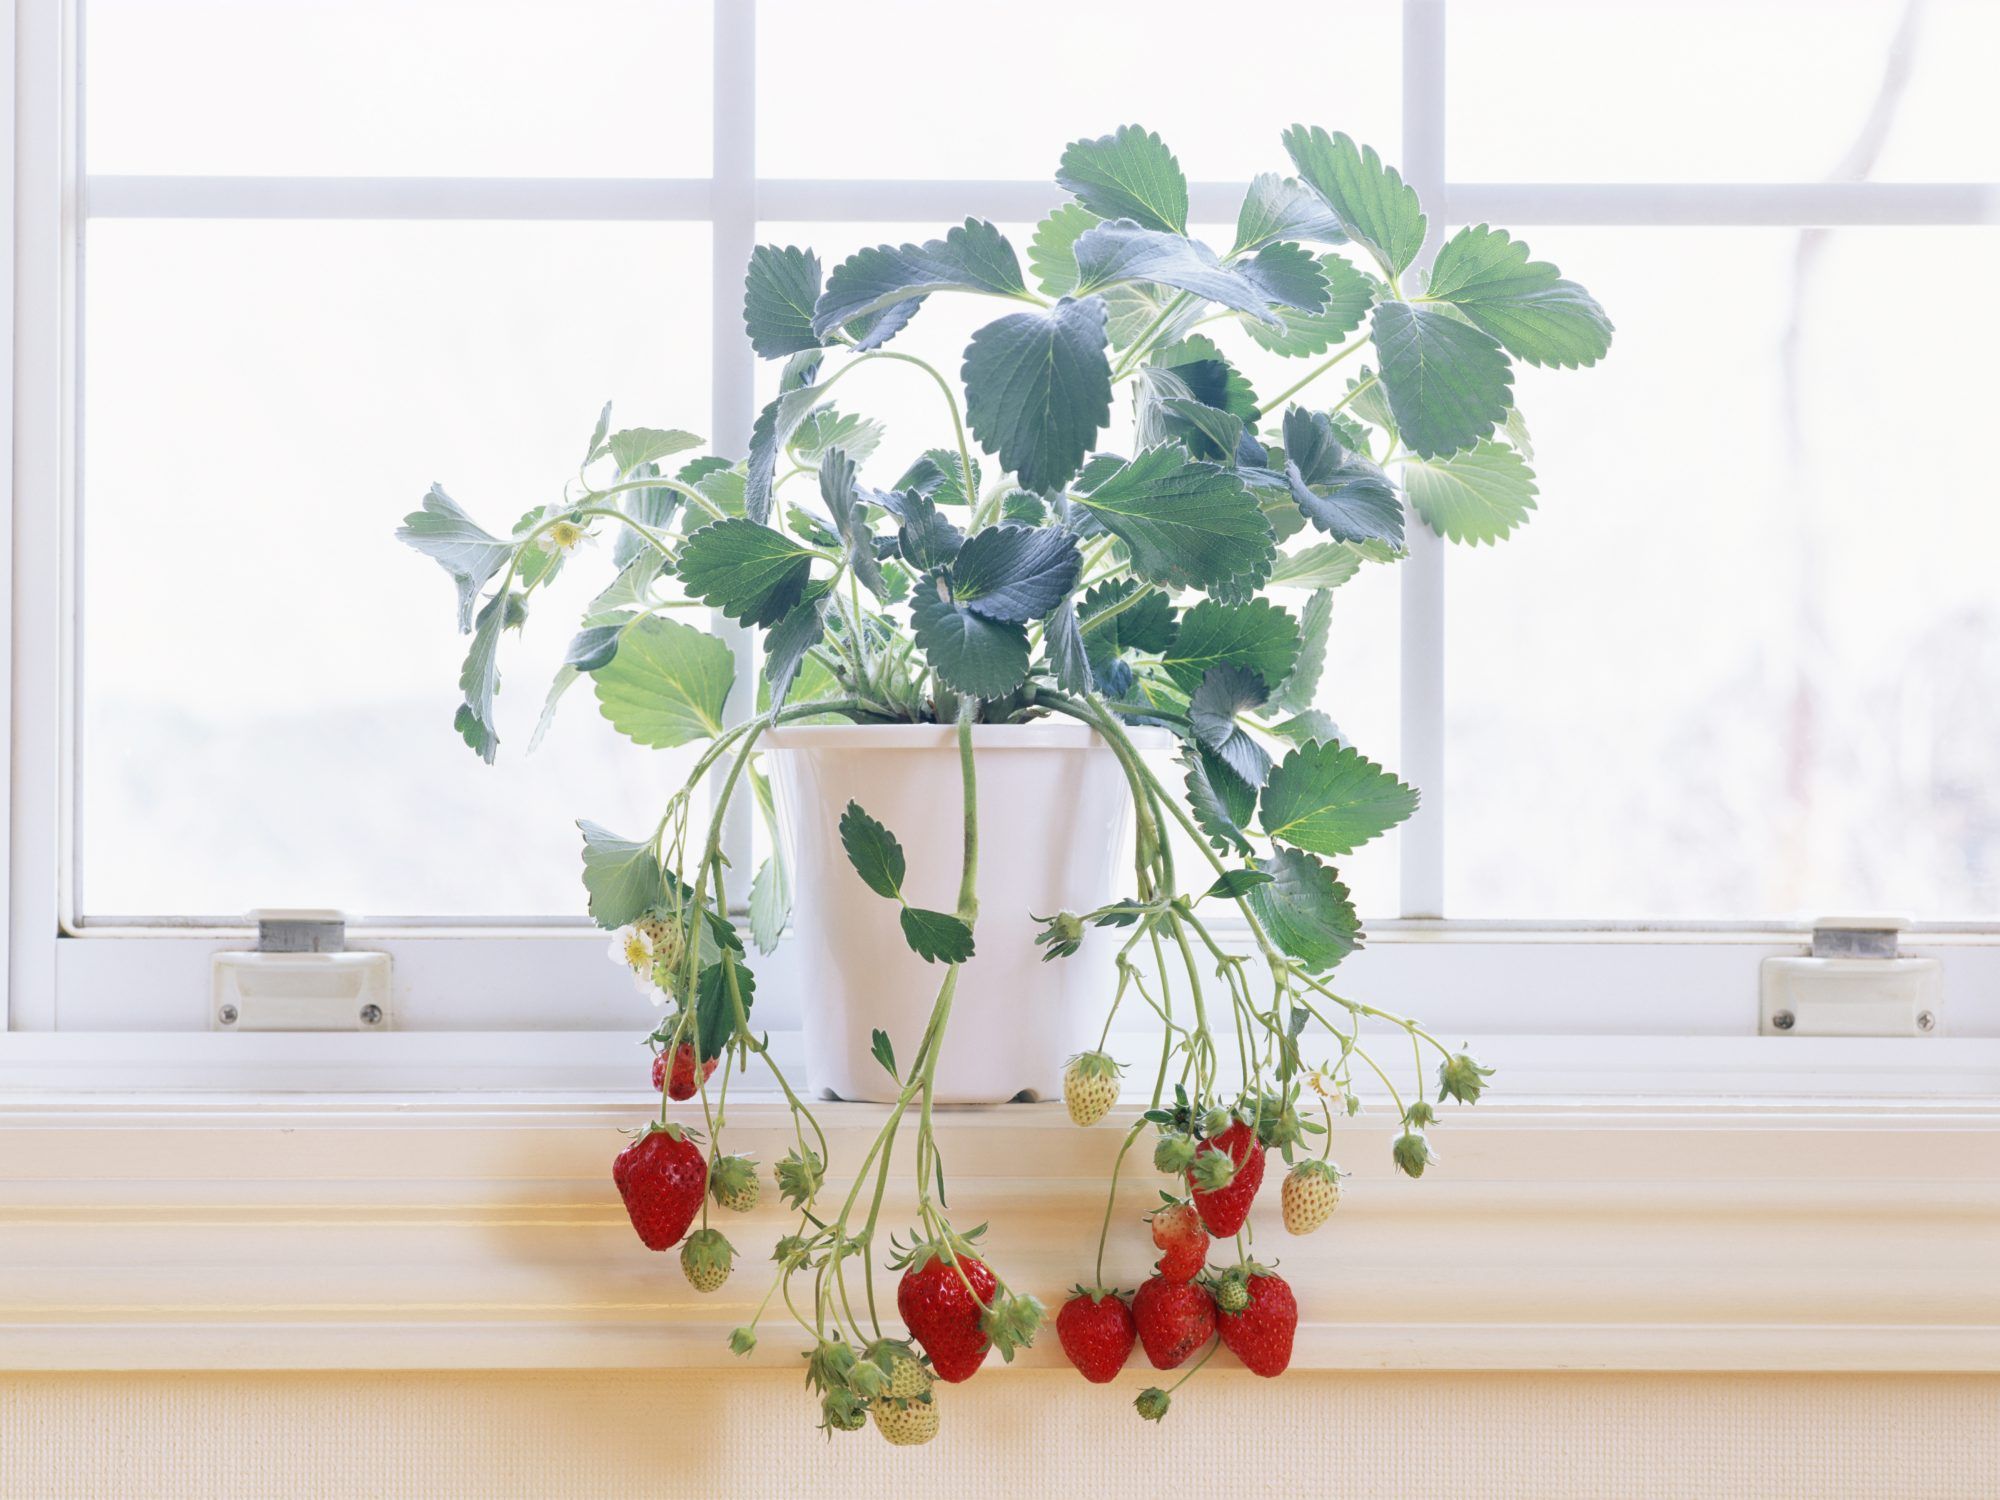 あなたが屋内で育てることができる10の果物と野菜